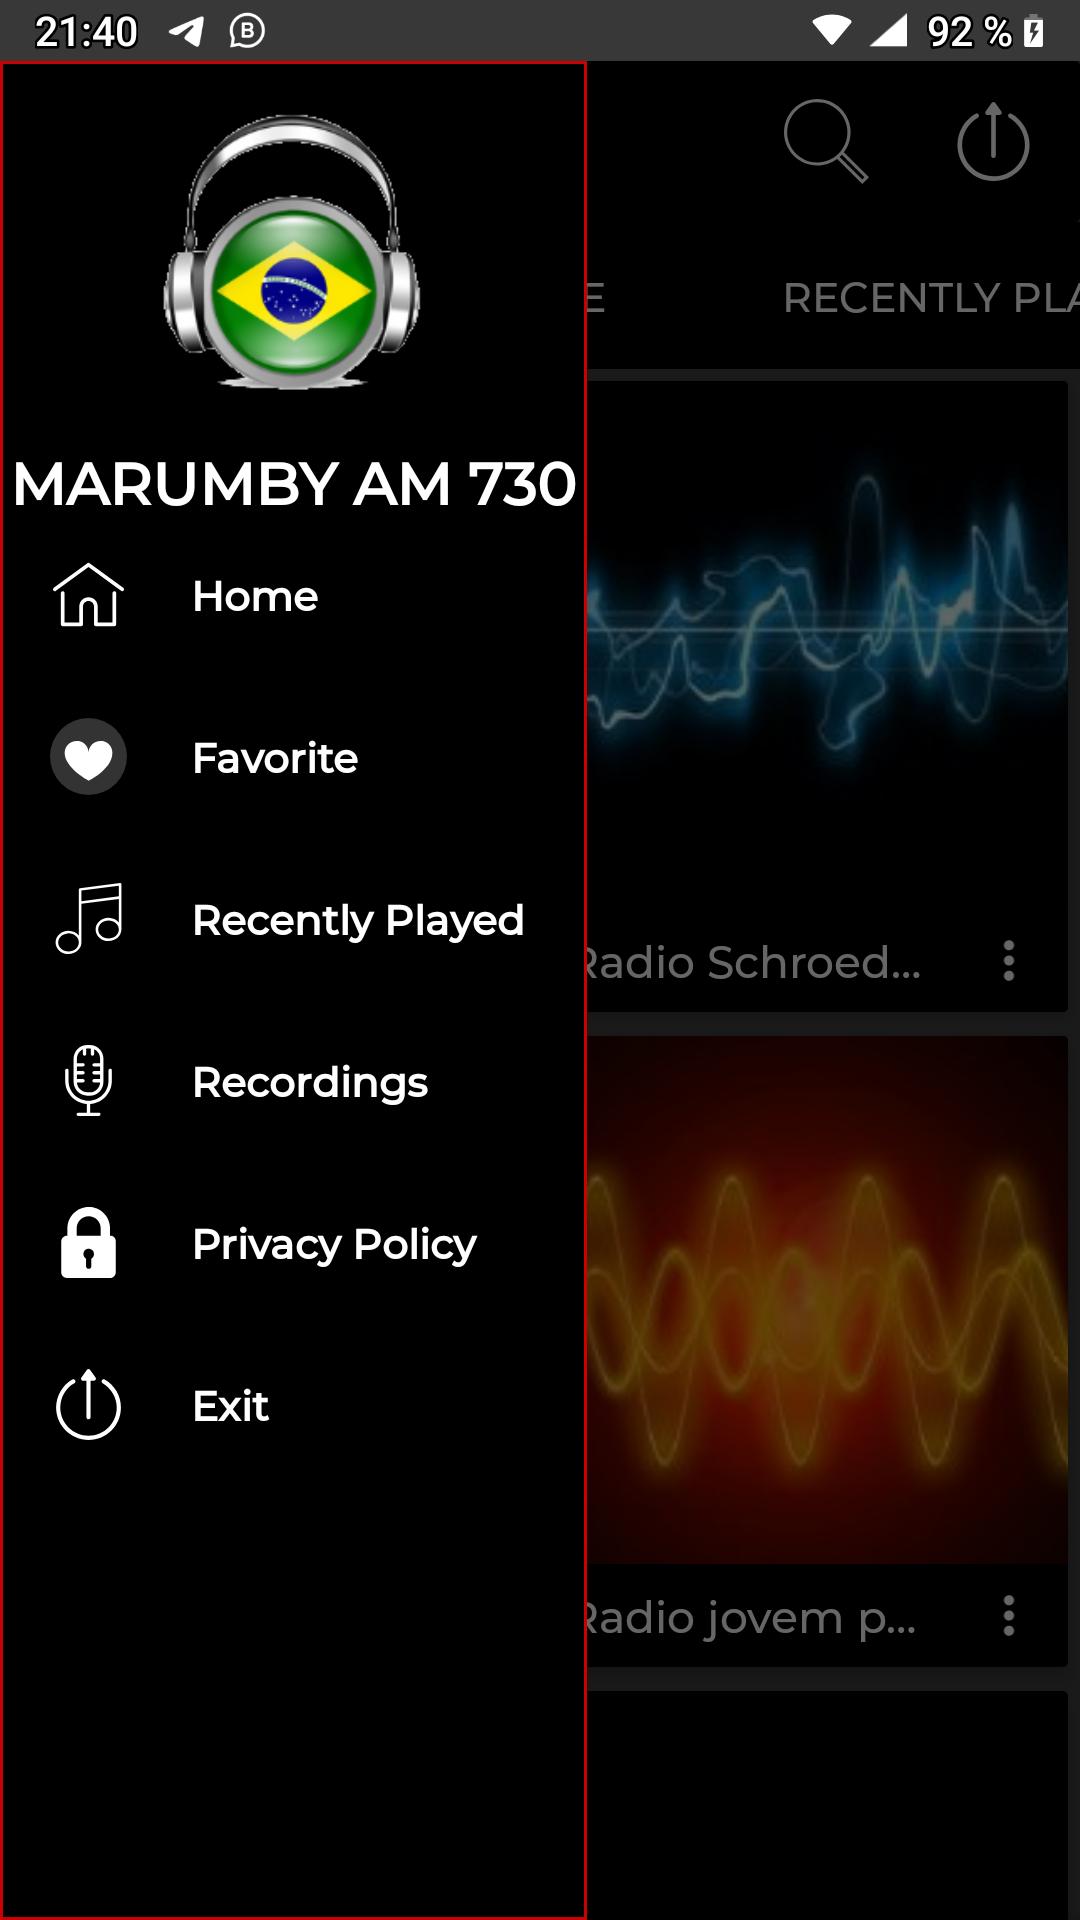 Download do APK de Radio marumby am 730 de curit para Android